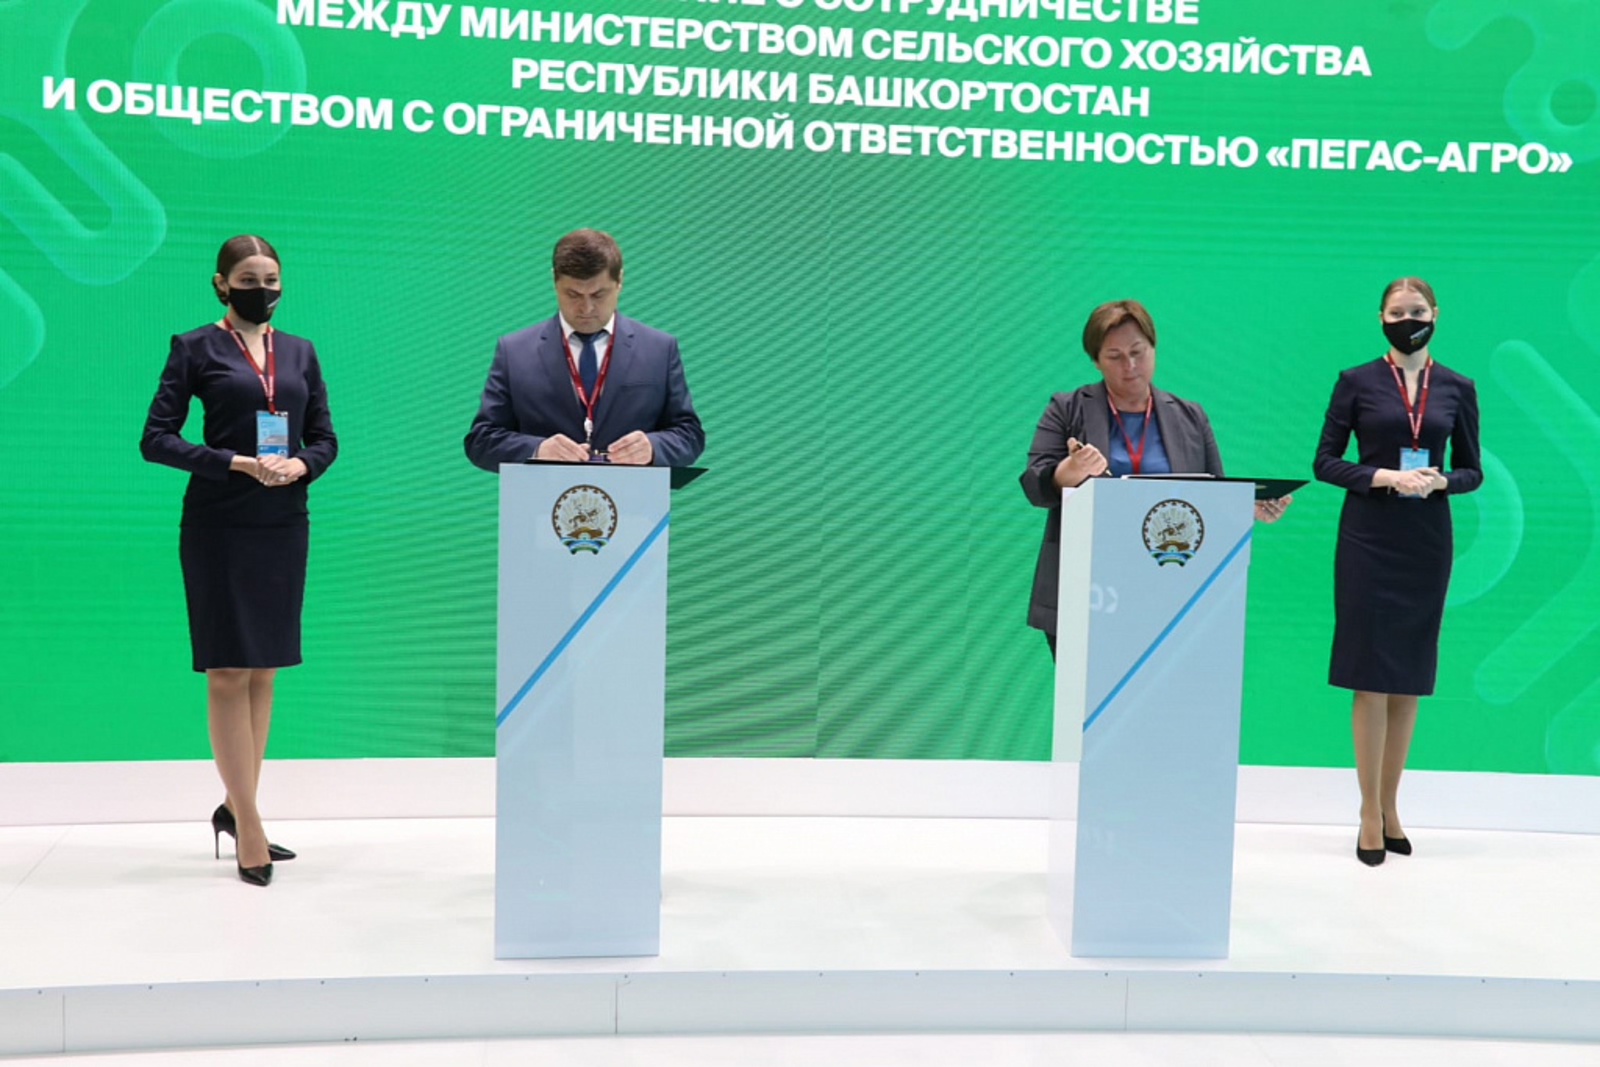 На Петербургском международном экономическом форуме Минсельхоз Башкирии заключил с компанией «Пегас-Агро» договор